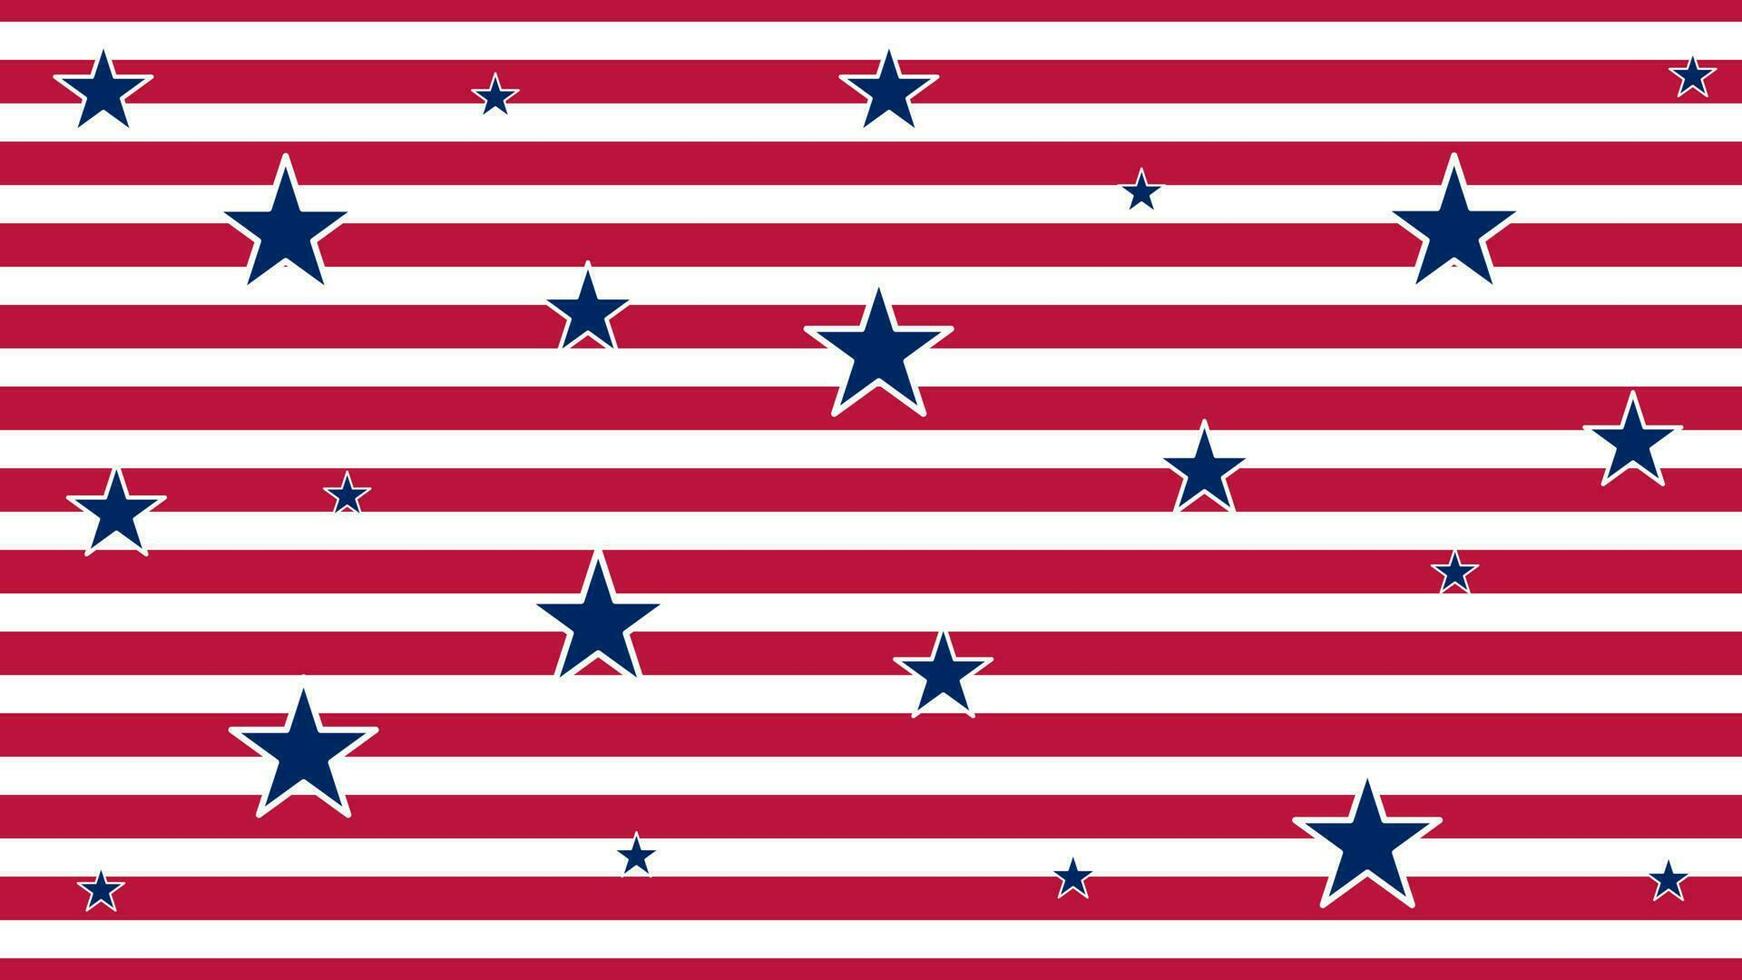 uns Denkmal Tag, USA amerikanisch Land Flagge und Symbole National Unabhängigkeit Tag 4 .. von Juli Feuerwerk vektor